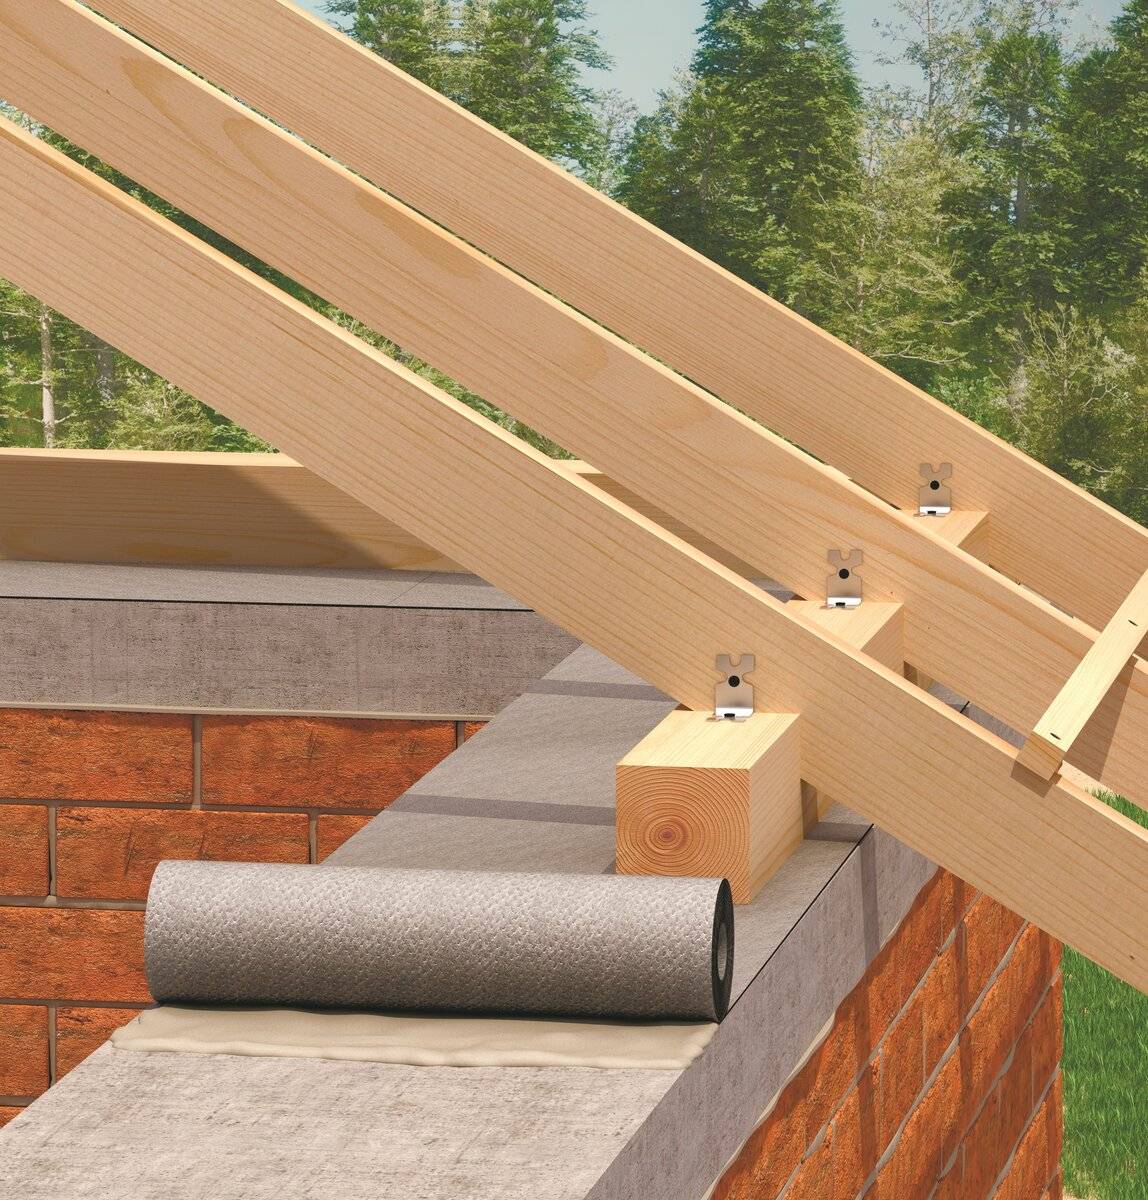 Правила установки мауэрлата на двускатной крыше